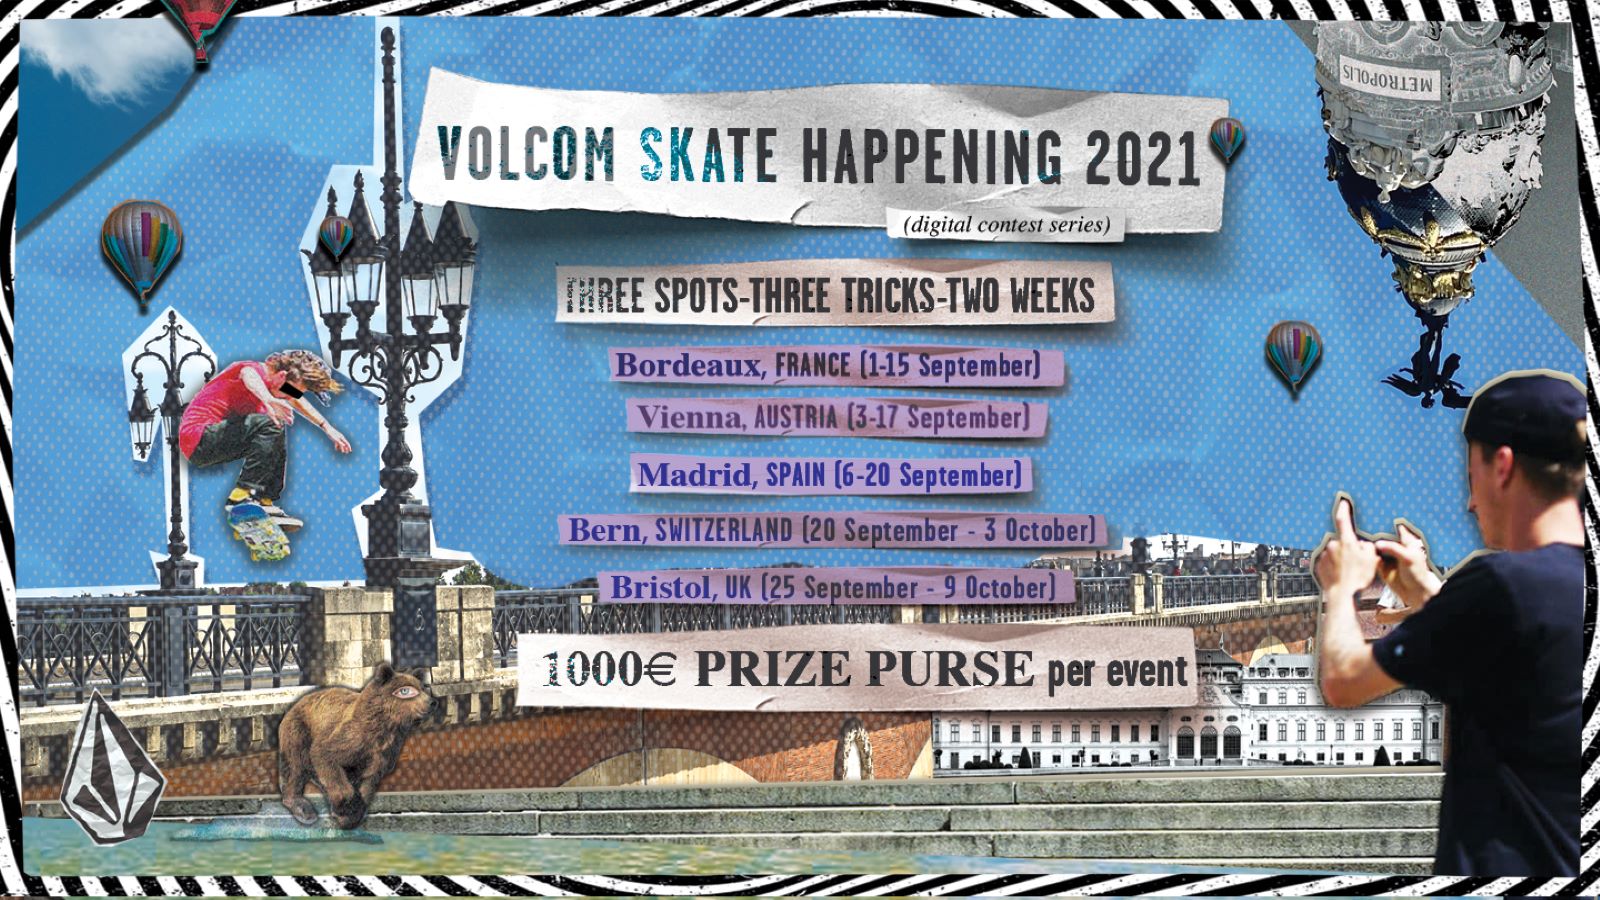 Skate happening 2021